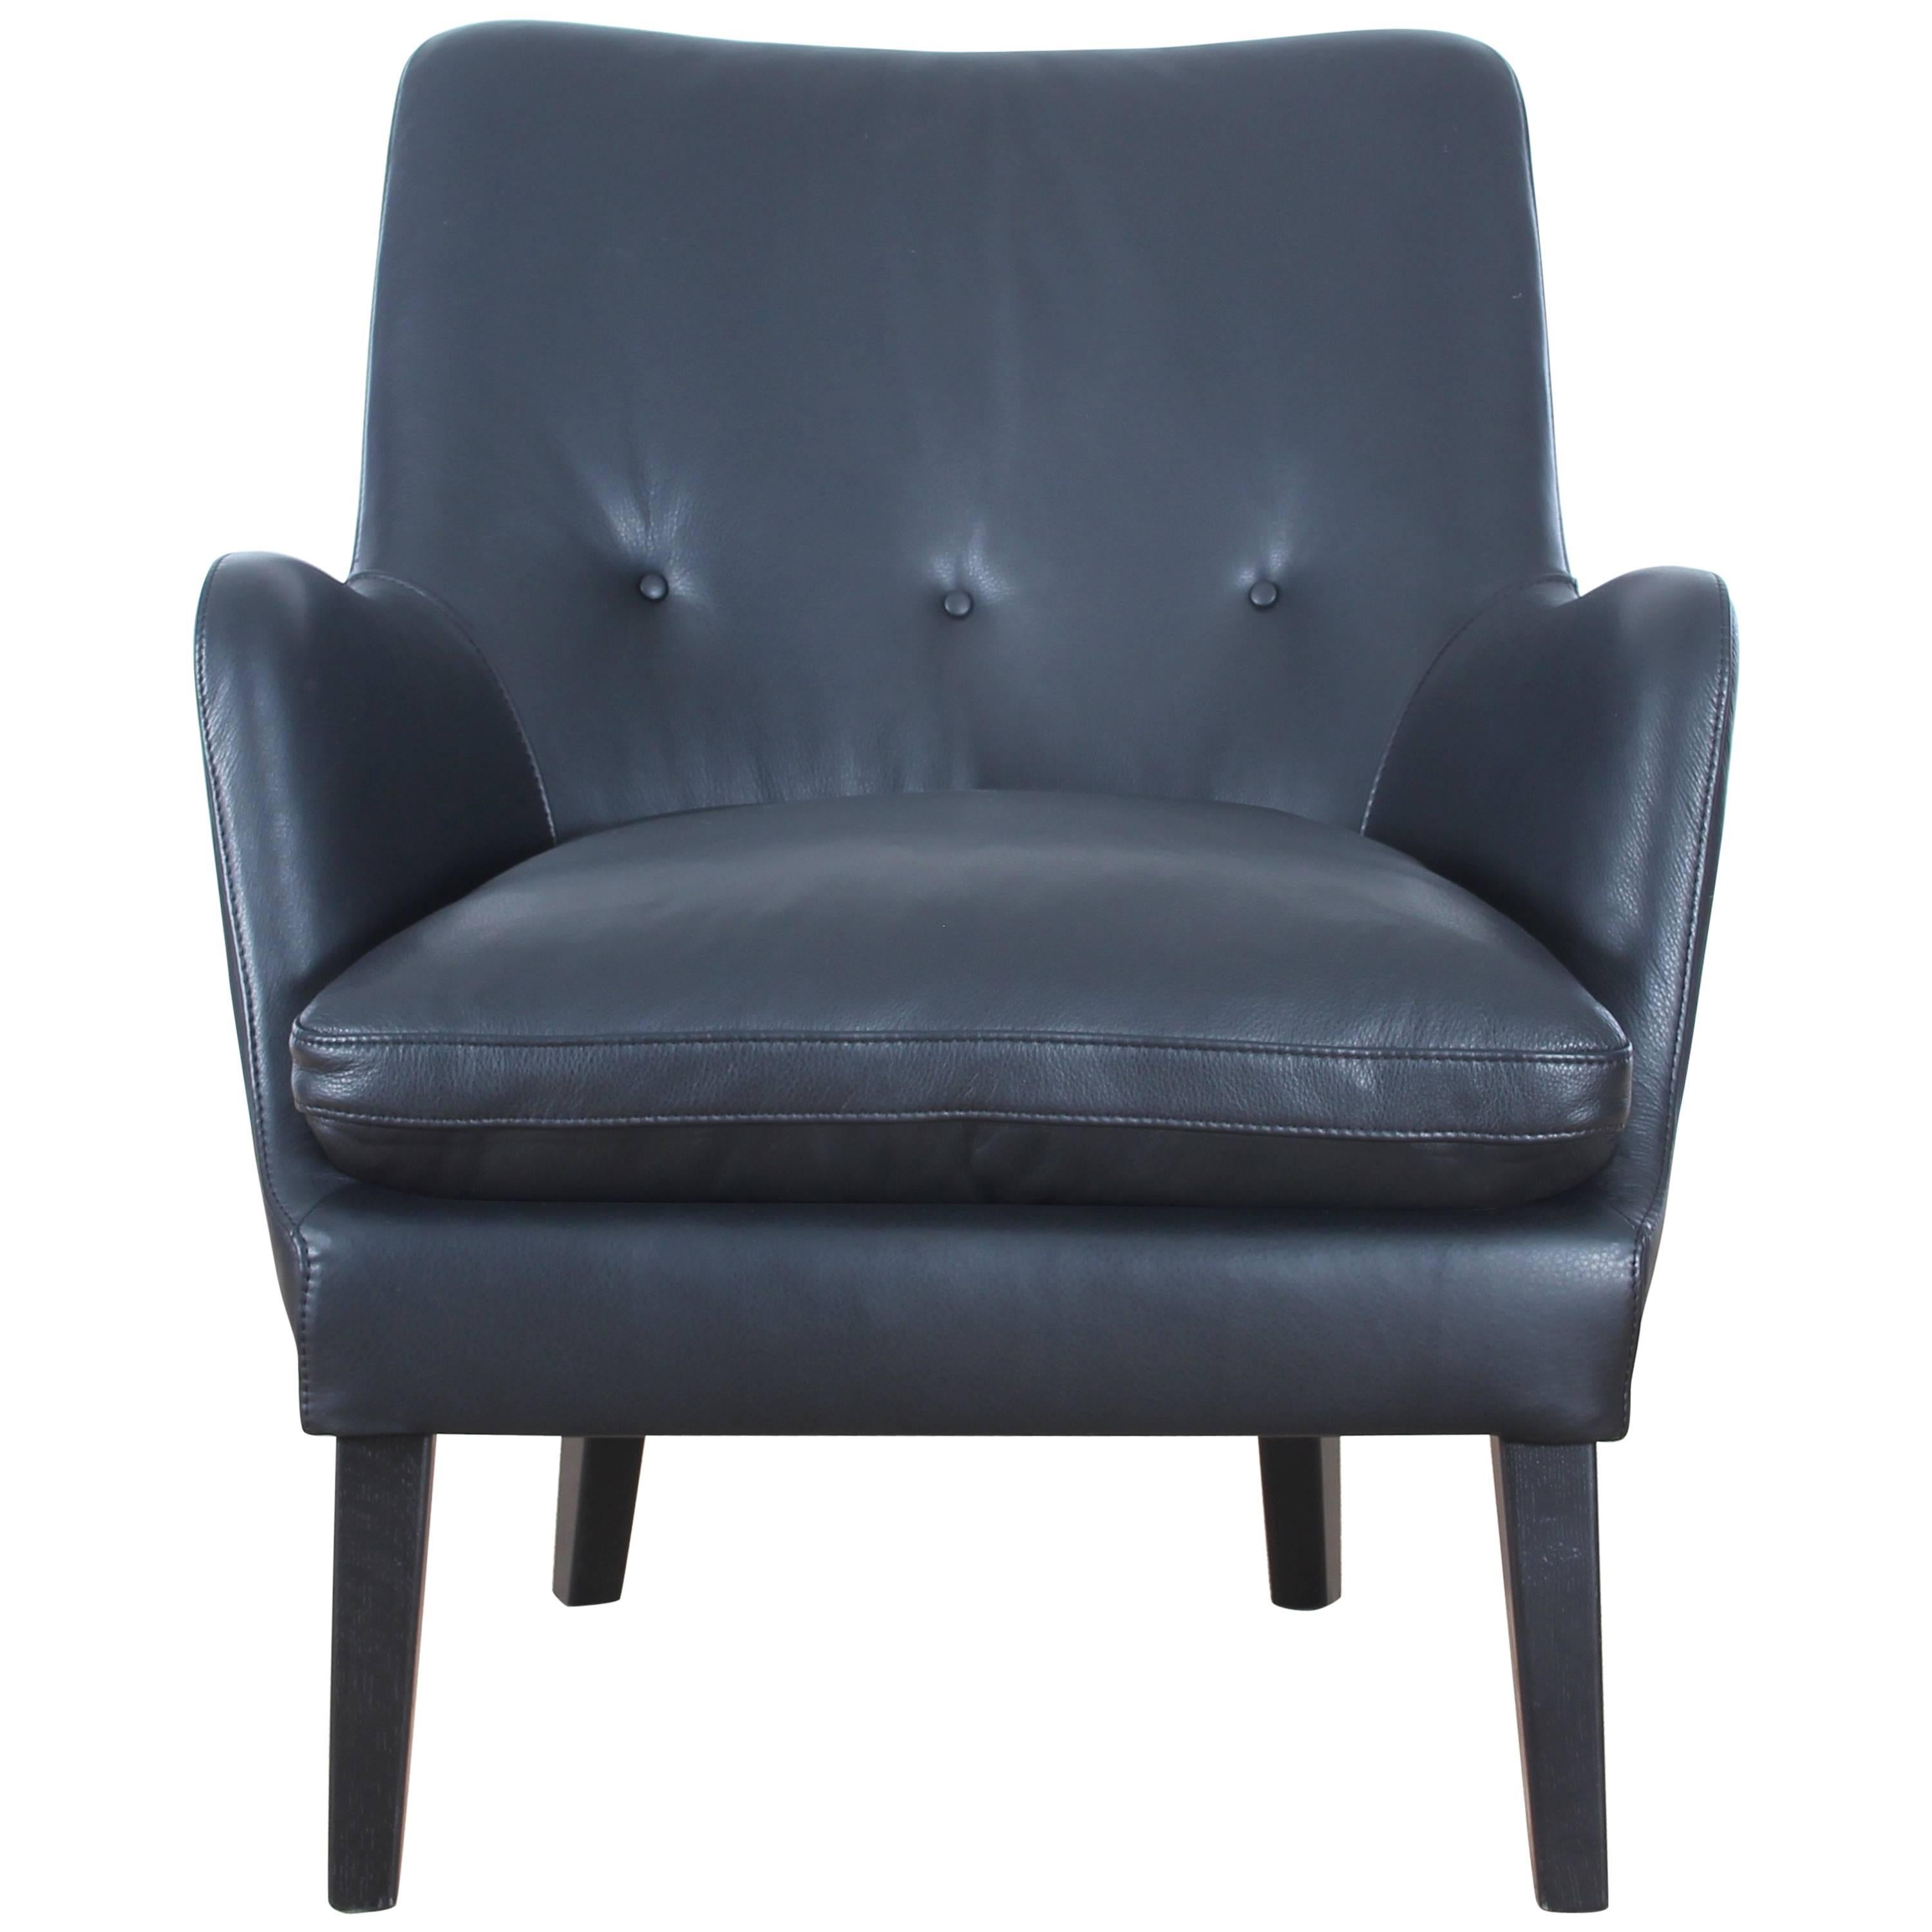 Mid-Century Modern Scandinavian Lounge Chair by Arne Vodder AV 53 New Release